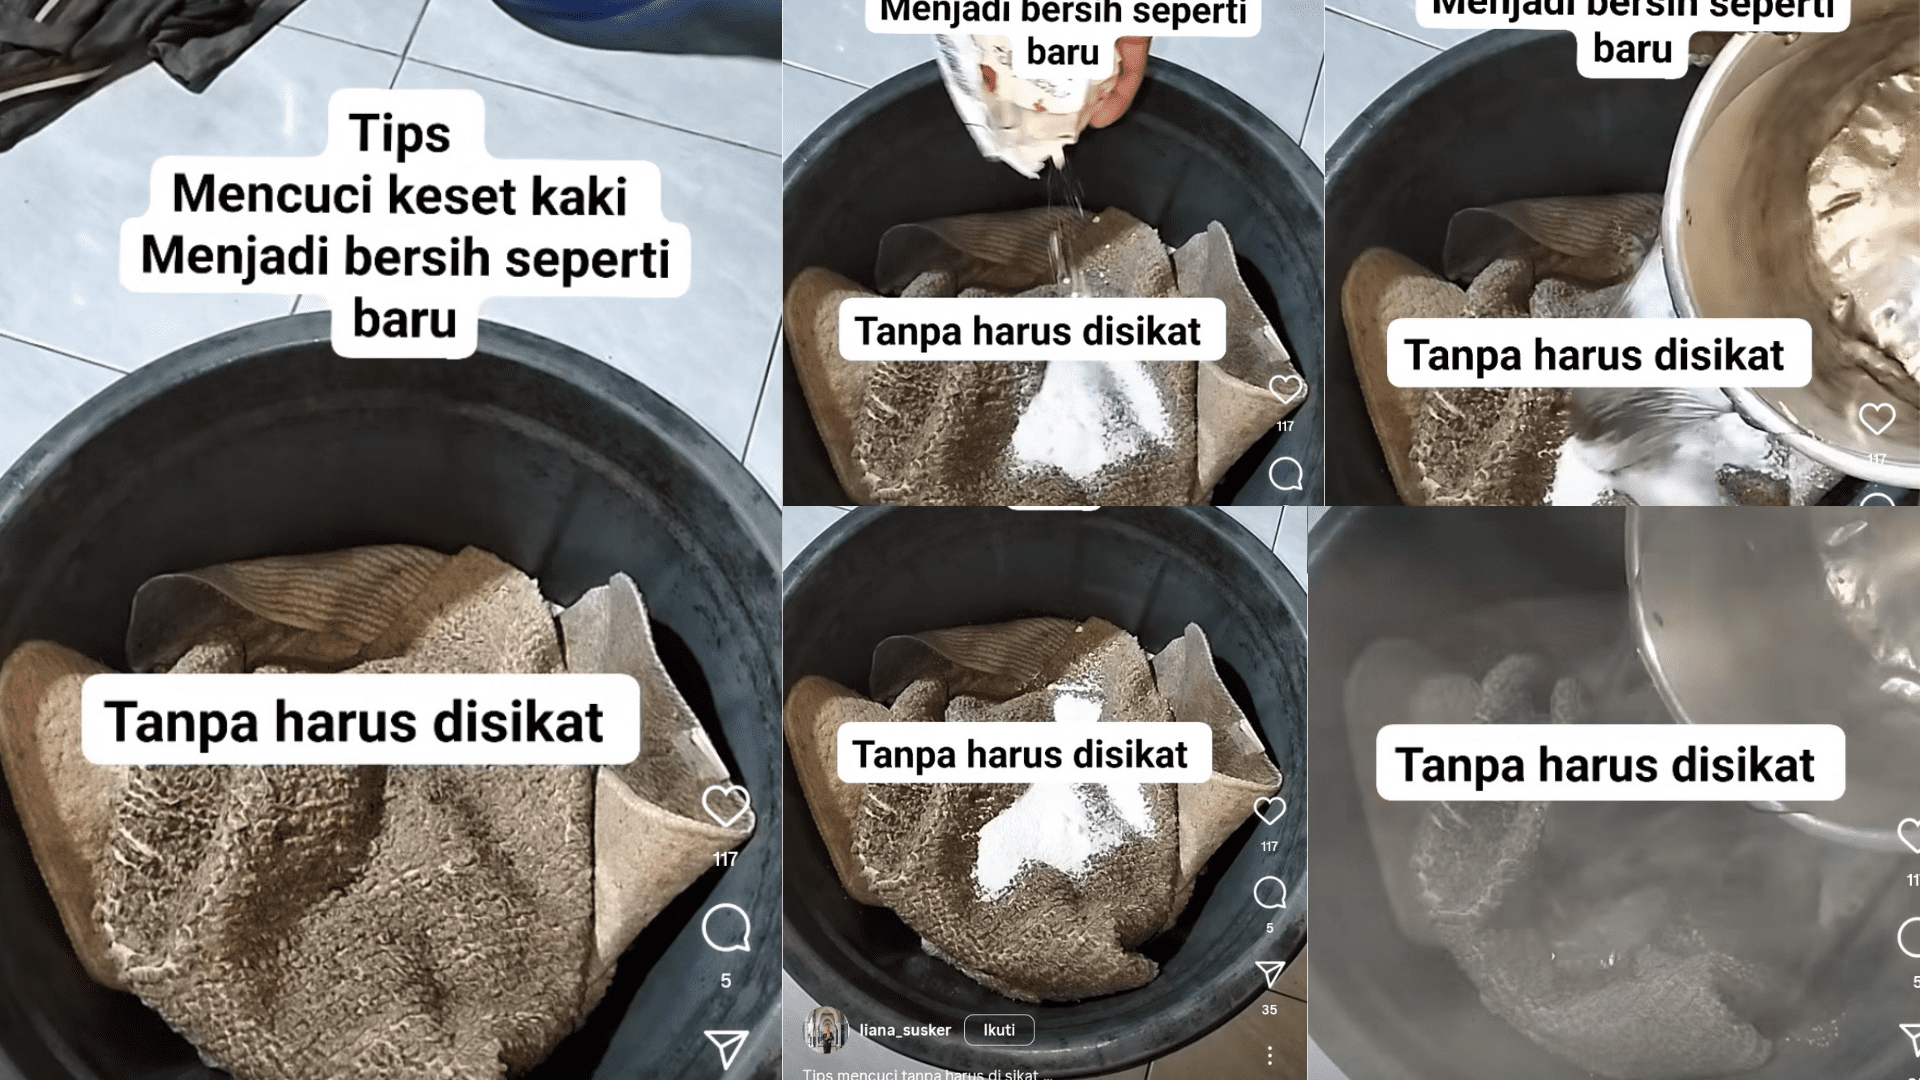 Tips Mencuci Keset Dekil Jadi Seperti Baru, Cukup Pakai Bahan Ini Keset Dekil Jadi Seperti Baru